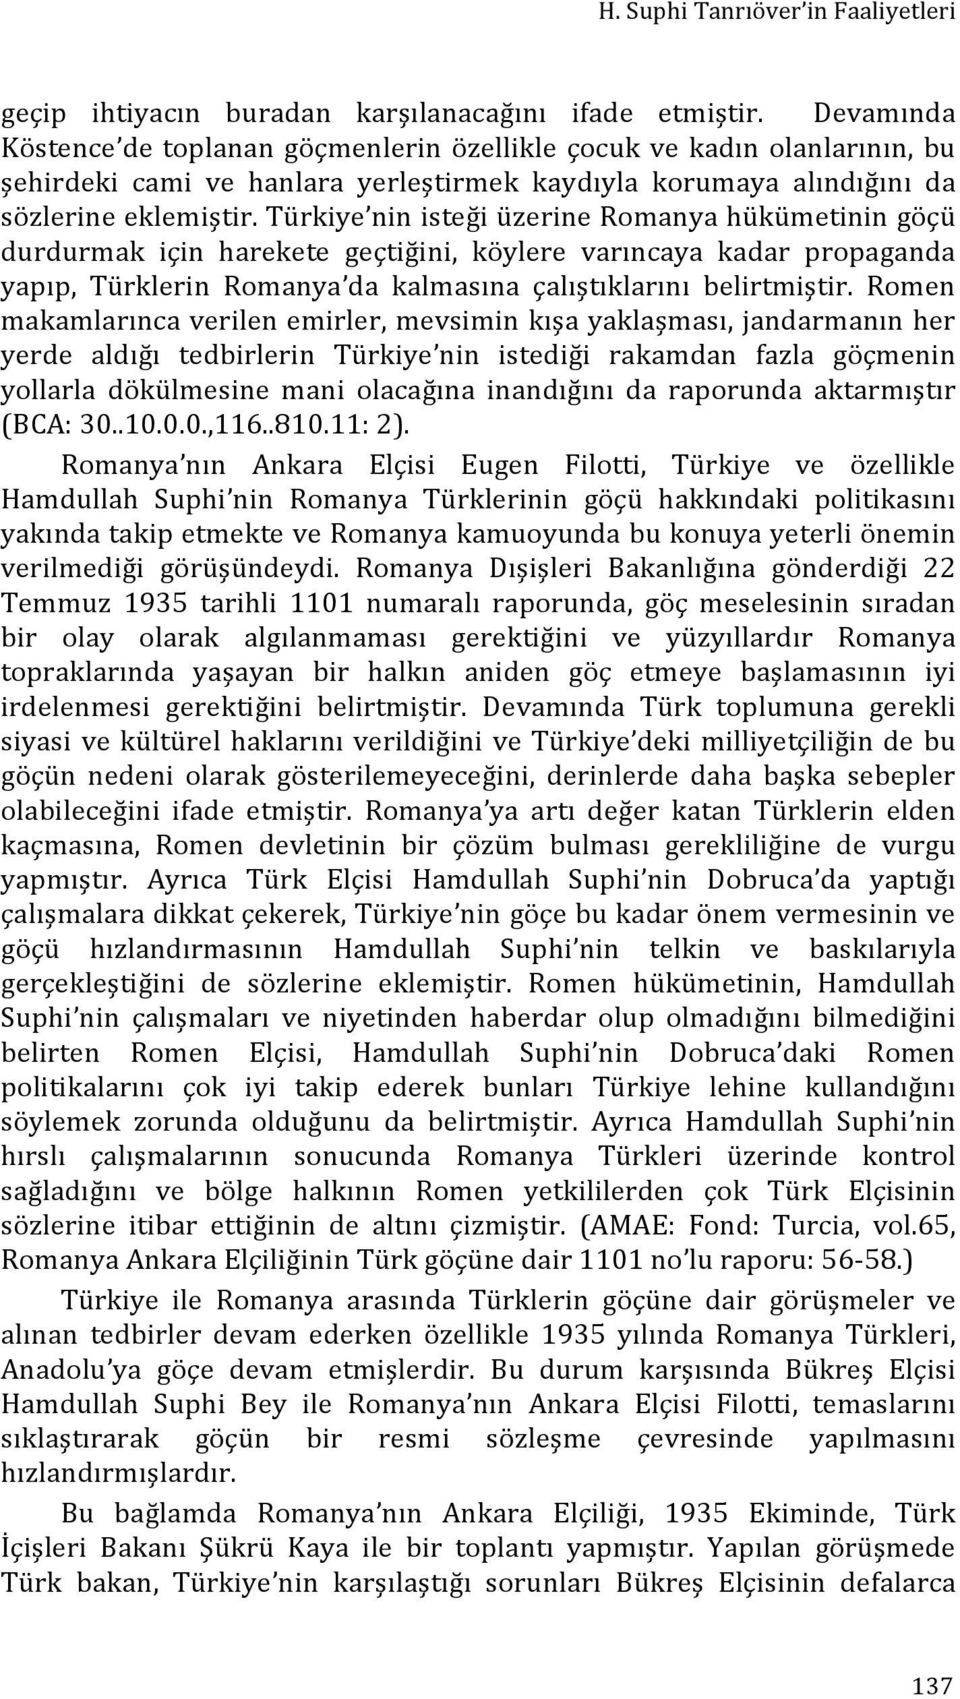 Türkiye nin isteği üzerine Romanya hükümetinin göçü durdurmak için harekete geçtiğini, köylere varıncaya kadar propaganda yapıp, Türklerin Romanya da kalmasına çalıştıklarını belirtmiştir.